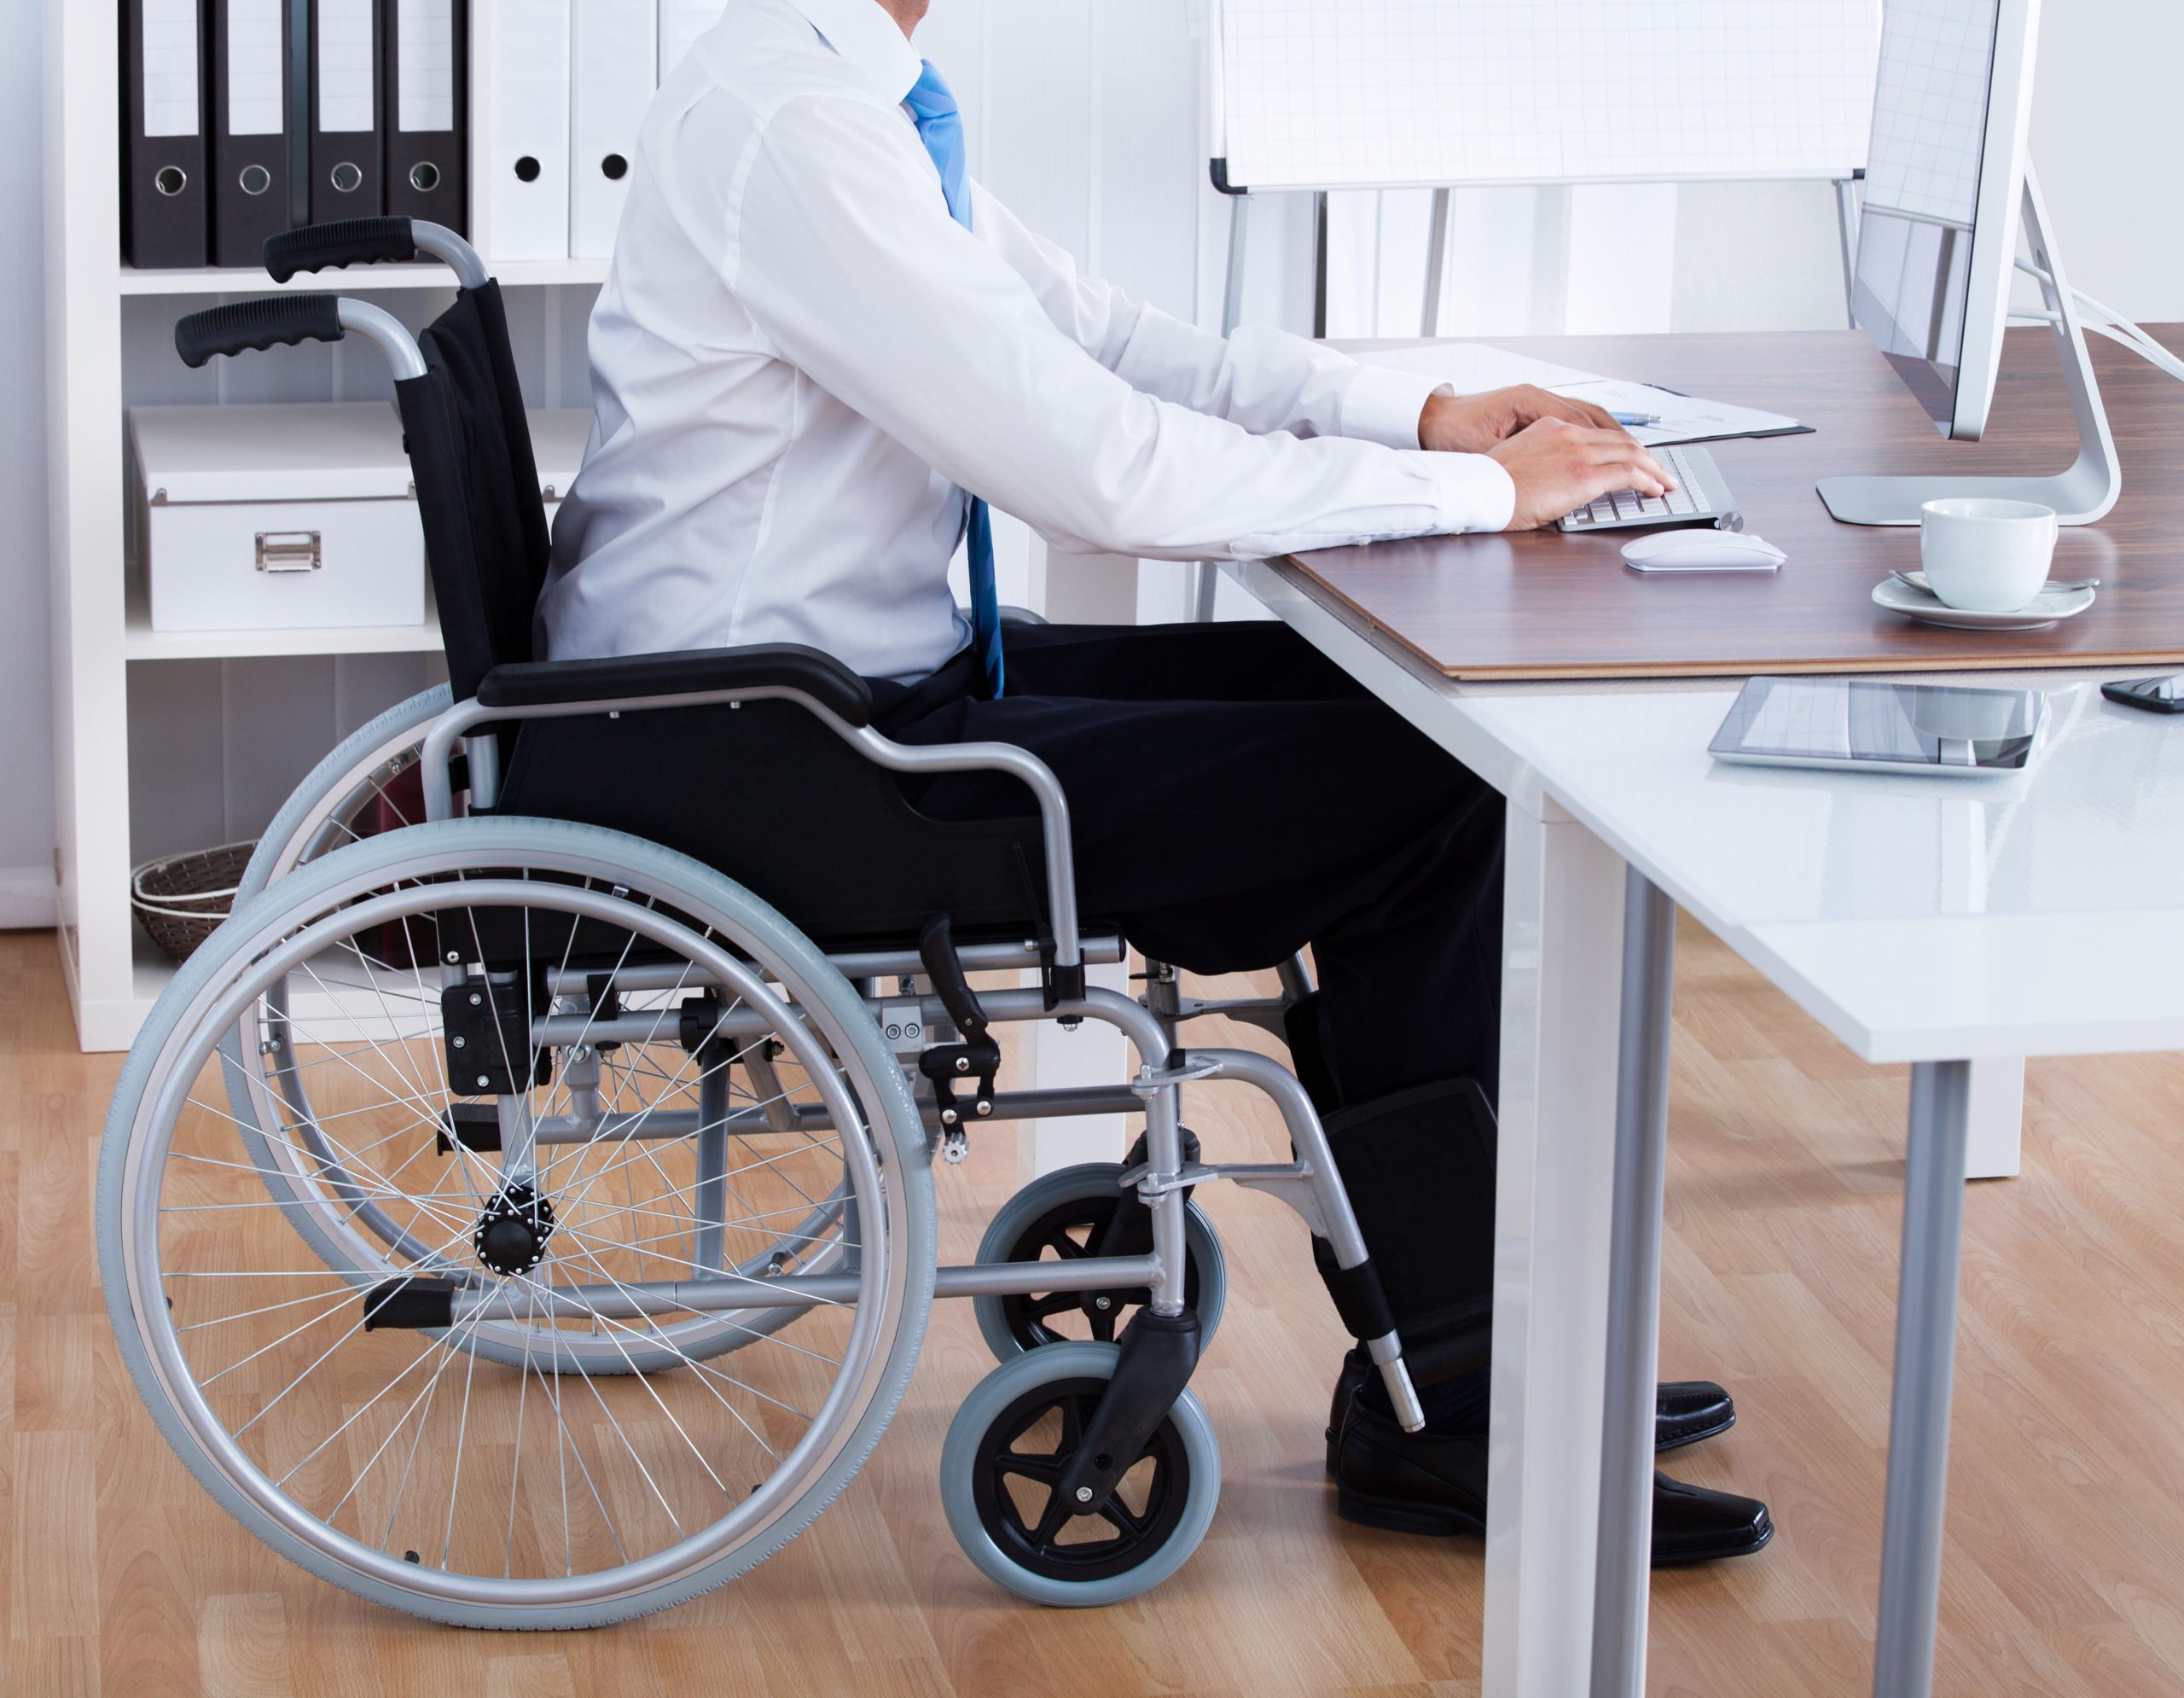 Заработок инвалид. Трудоустройство инвалидов. Рабочие места для инвалидов. Рабочее место для людей с ограниченными возможностями. Оснащение рабочих мест для инвалидов.